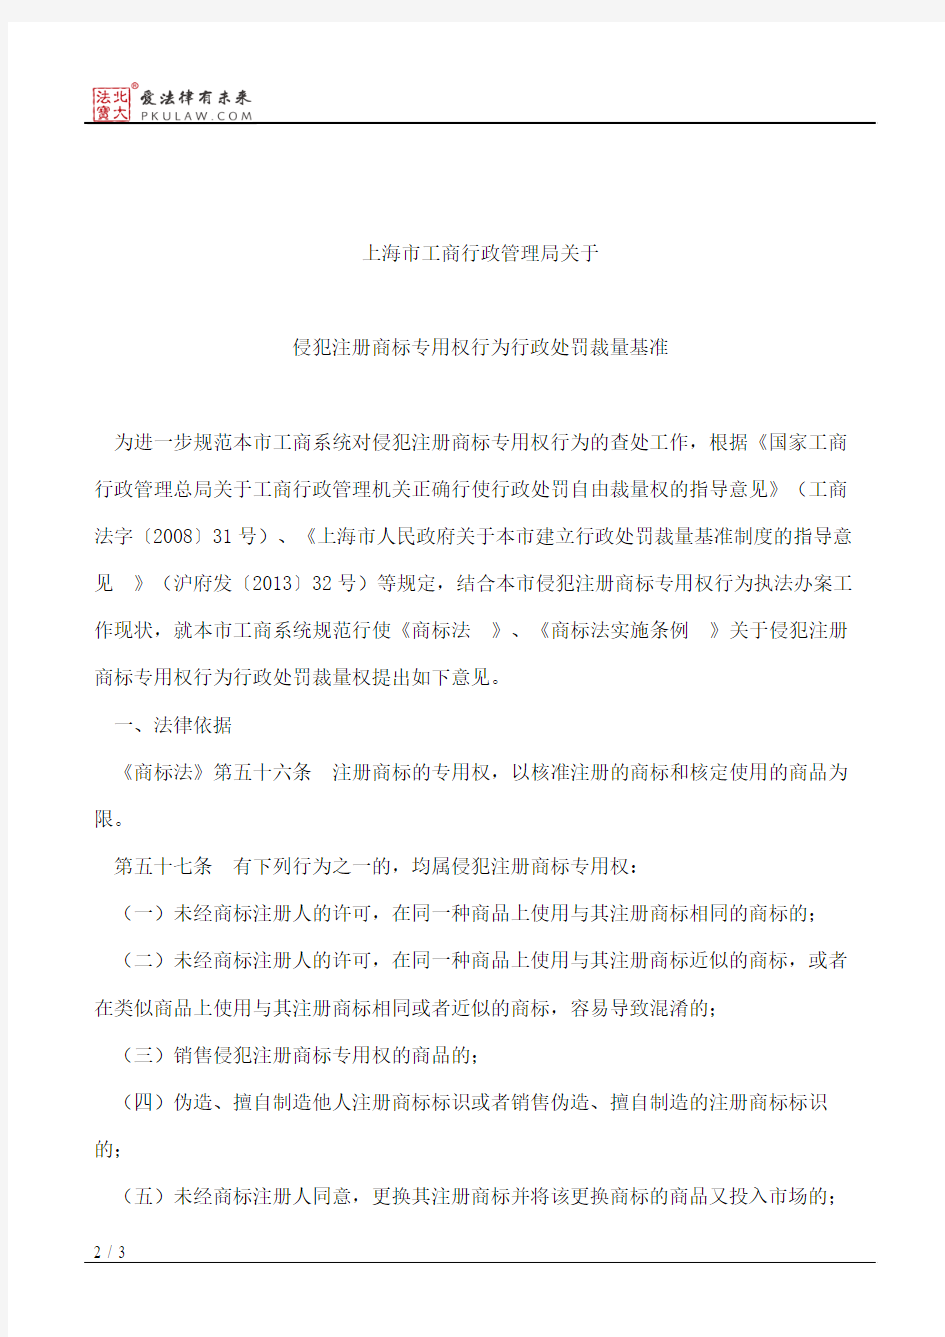 上海市工商行政管理局关于印发《上海市工商行政管理局关于侵犯注